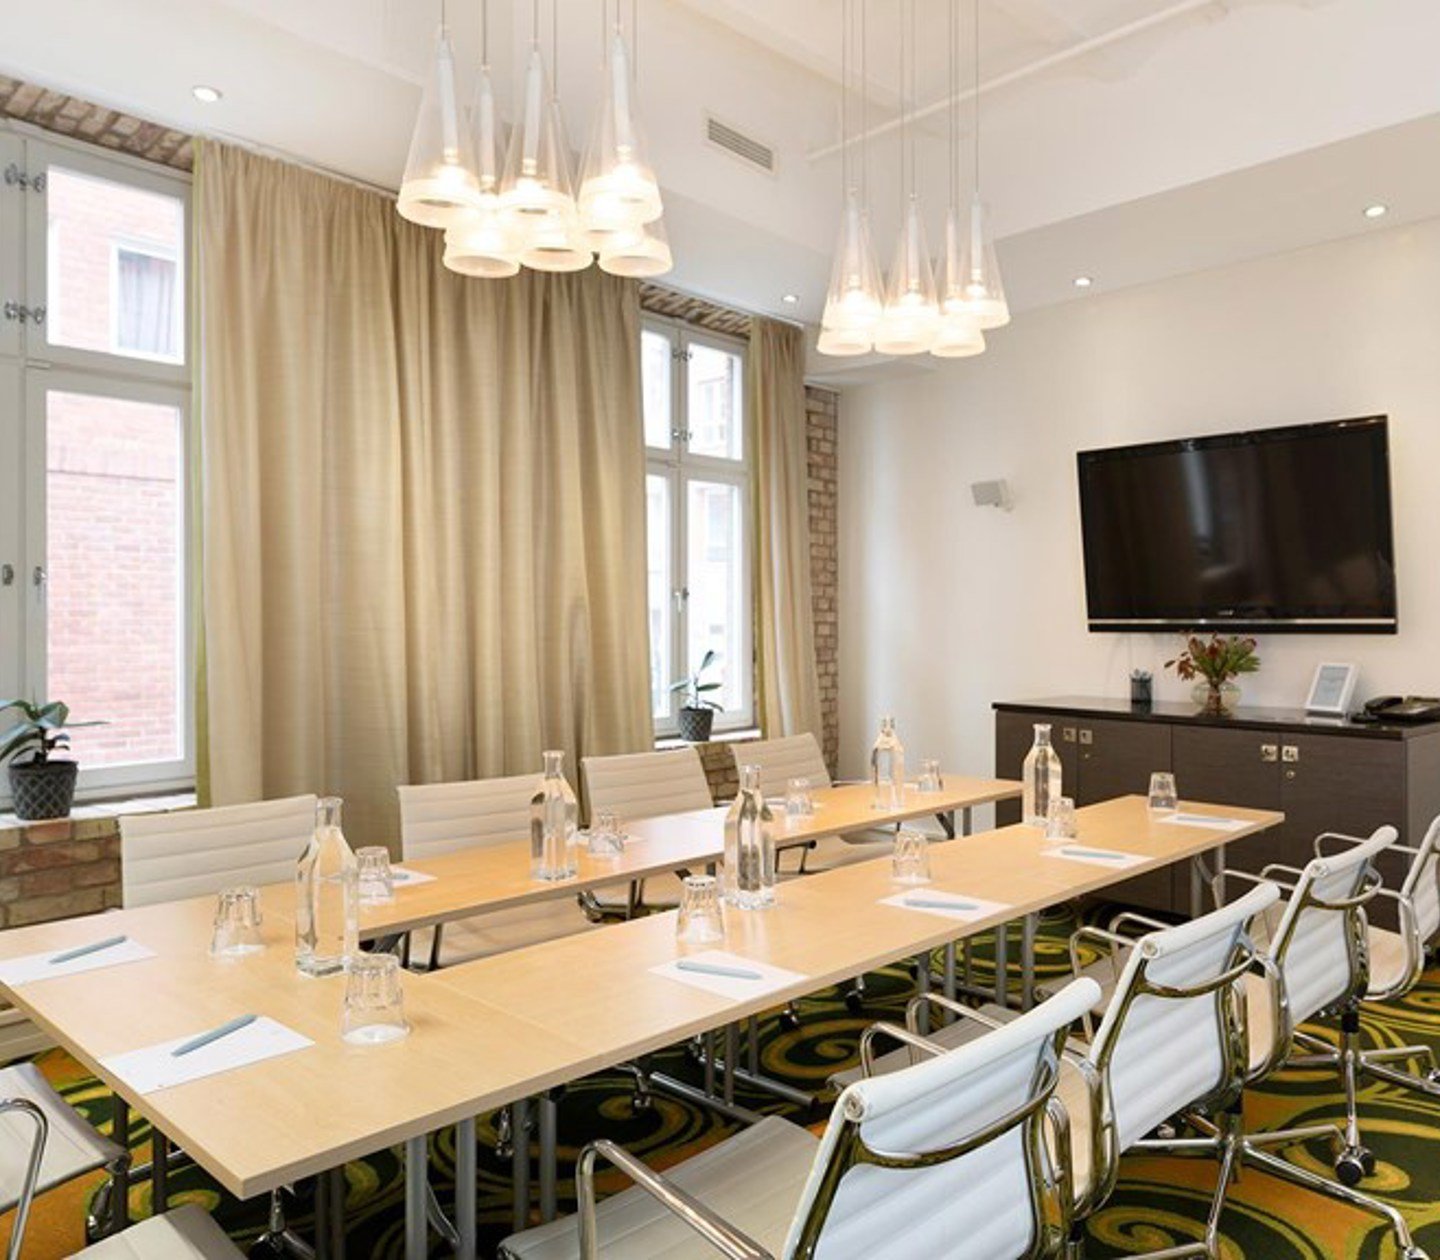 Konferensrum med styrelsesittning, ljusa väggar, grönmönstrad matta, stora fönster